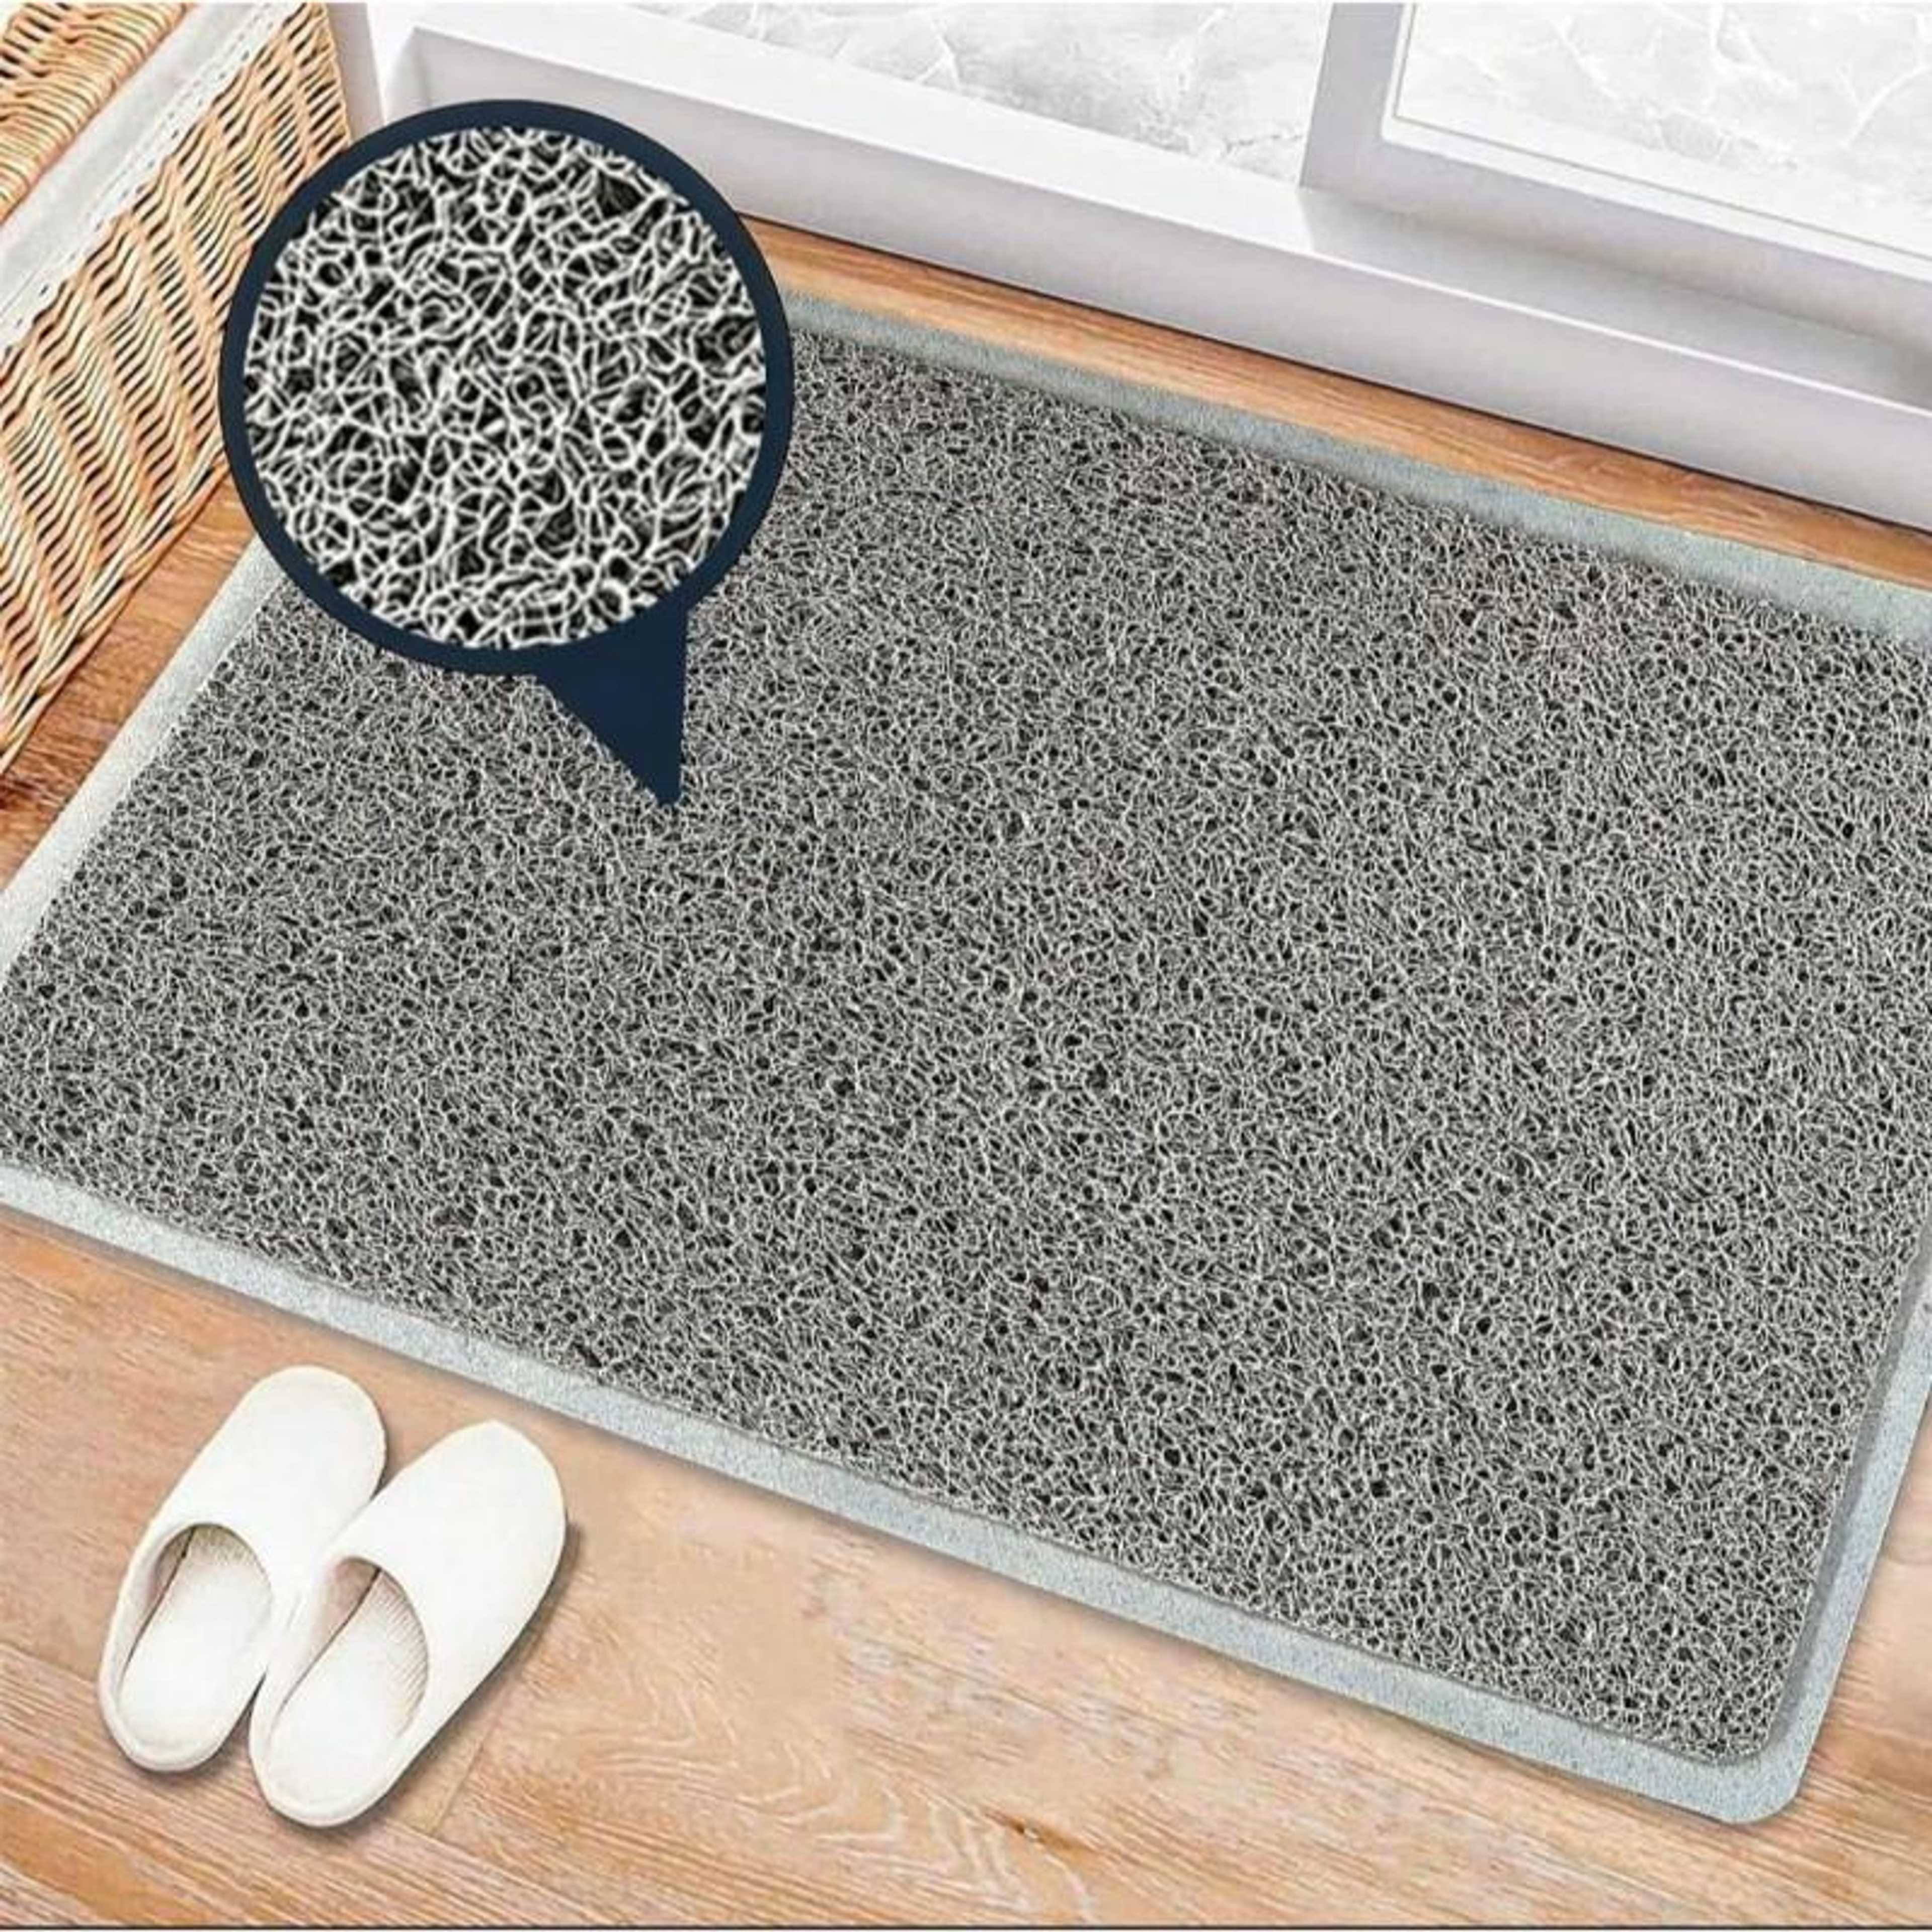 Al Ferash Anti Slip Plastic Floor Mats, Waterproof Door Mat, Bath Mat, Room Mat